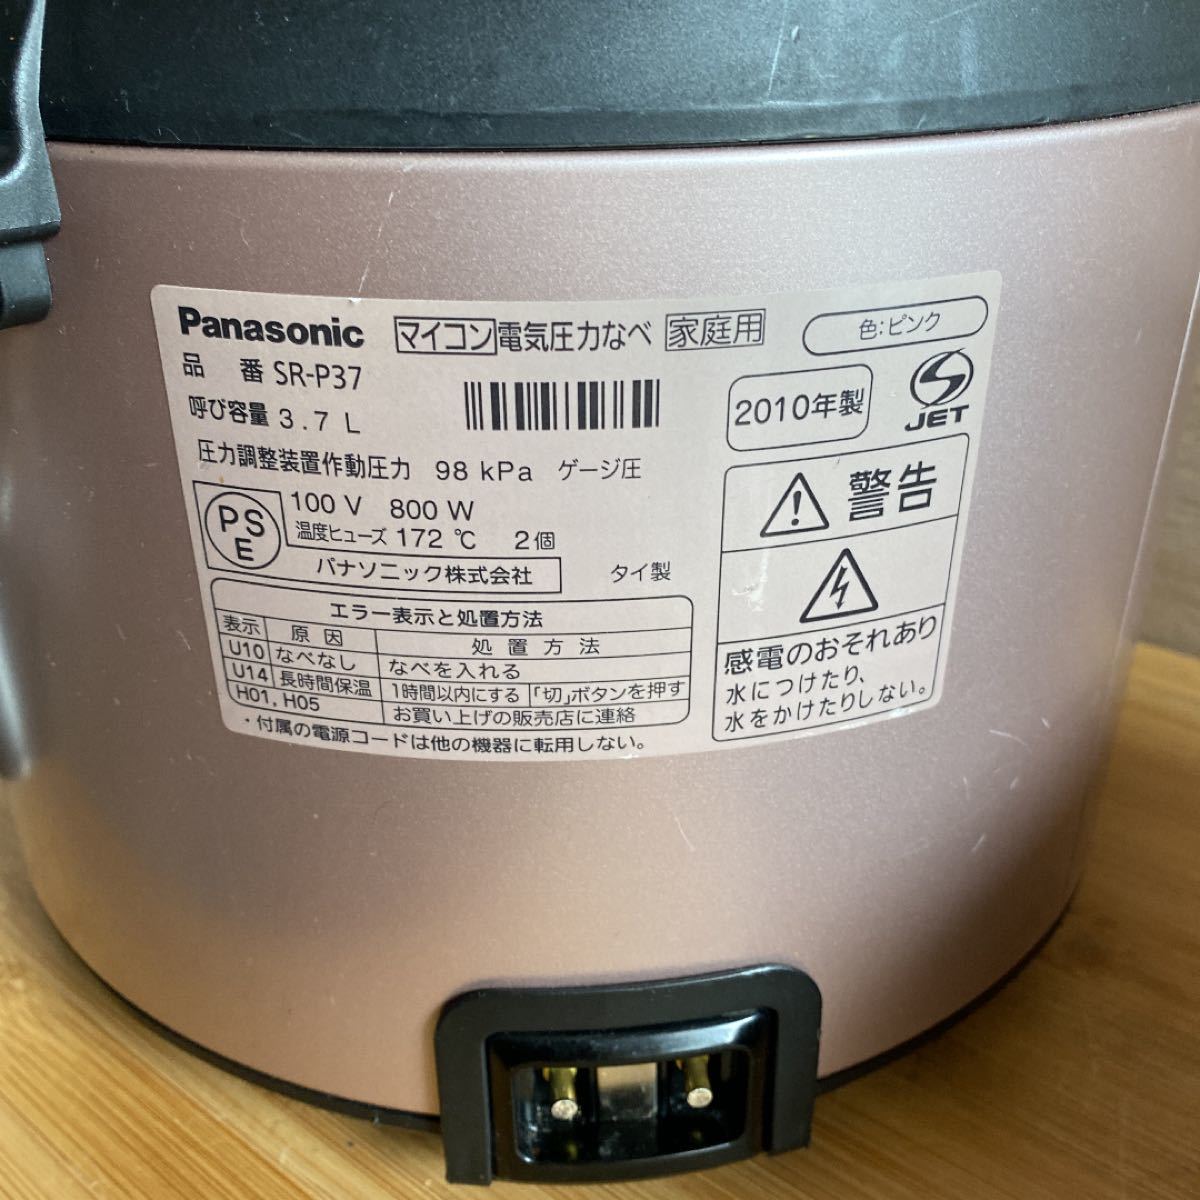 Panasonic マイコン電気圧力鍋